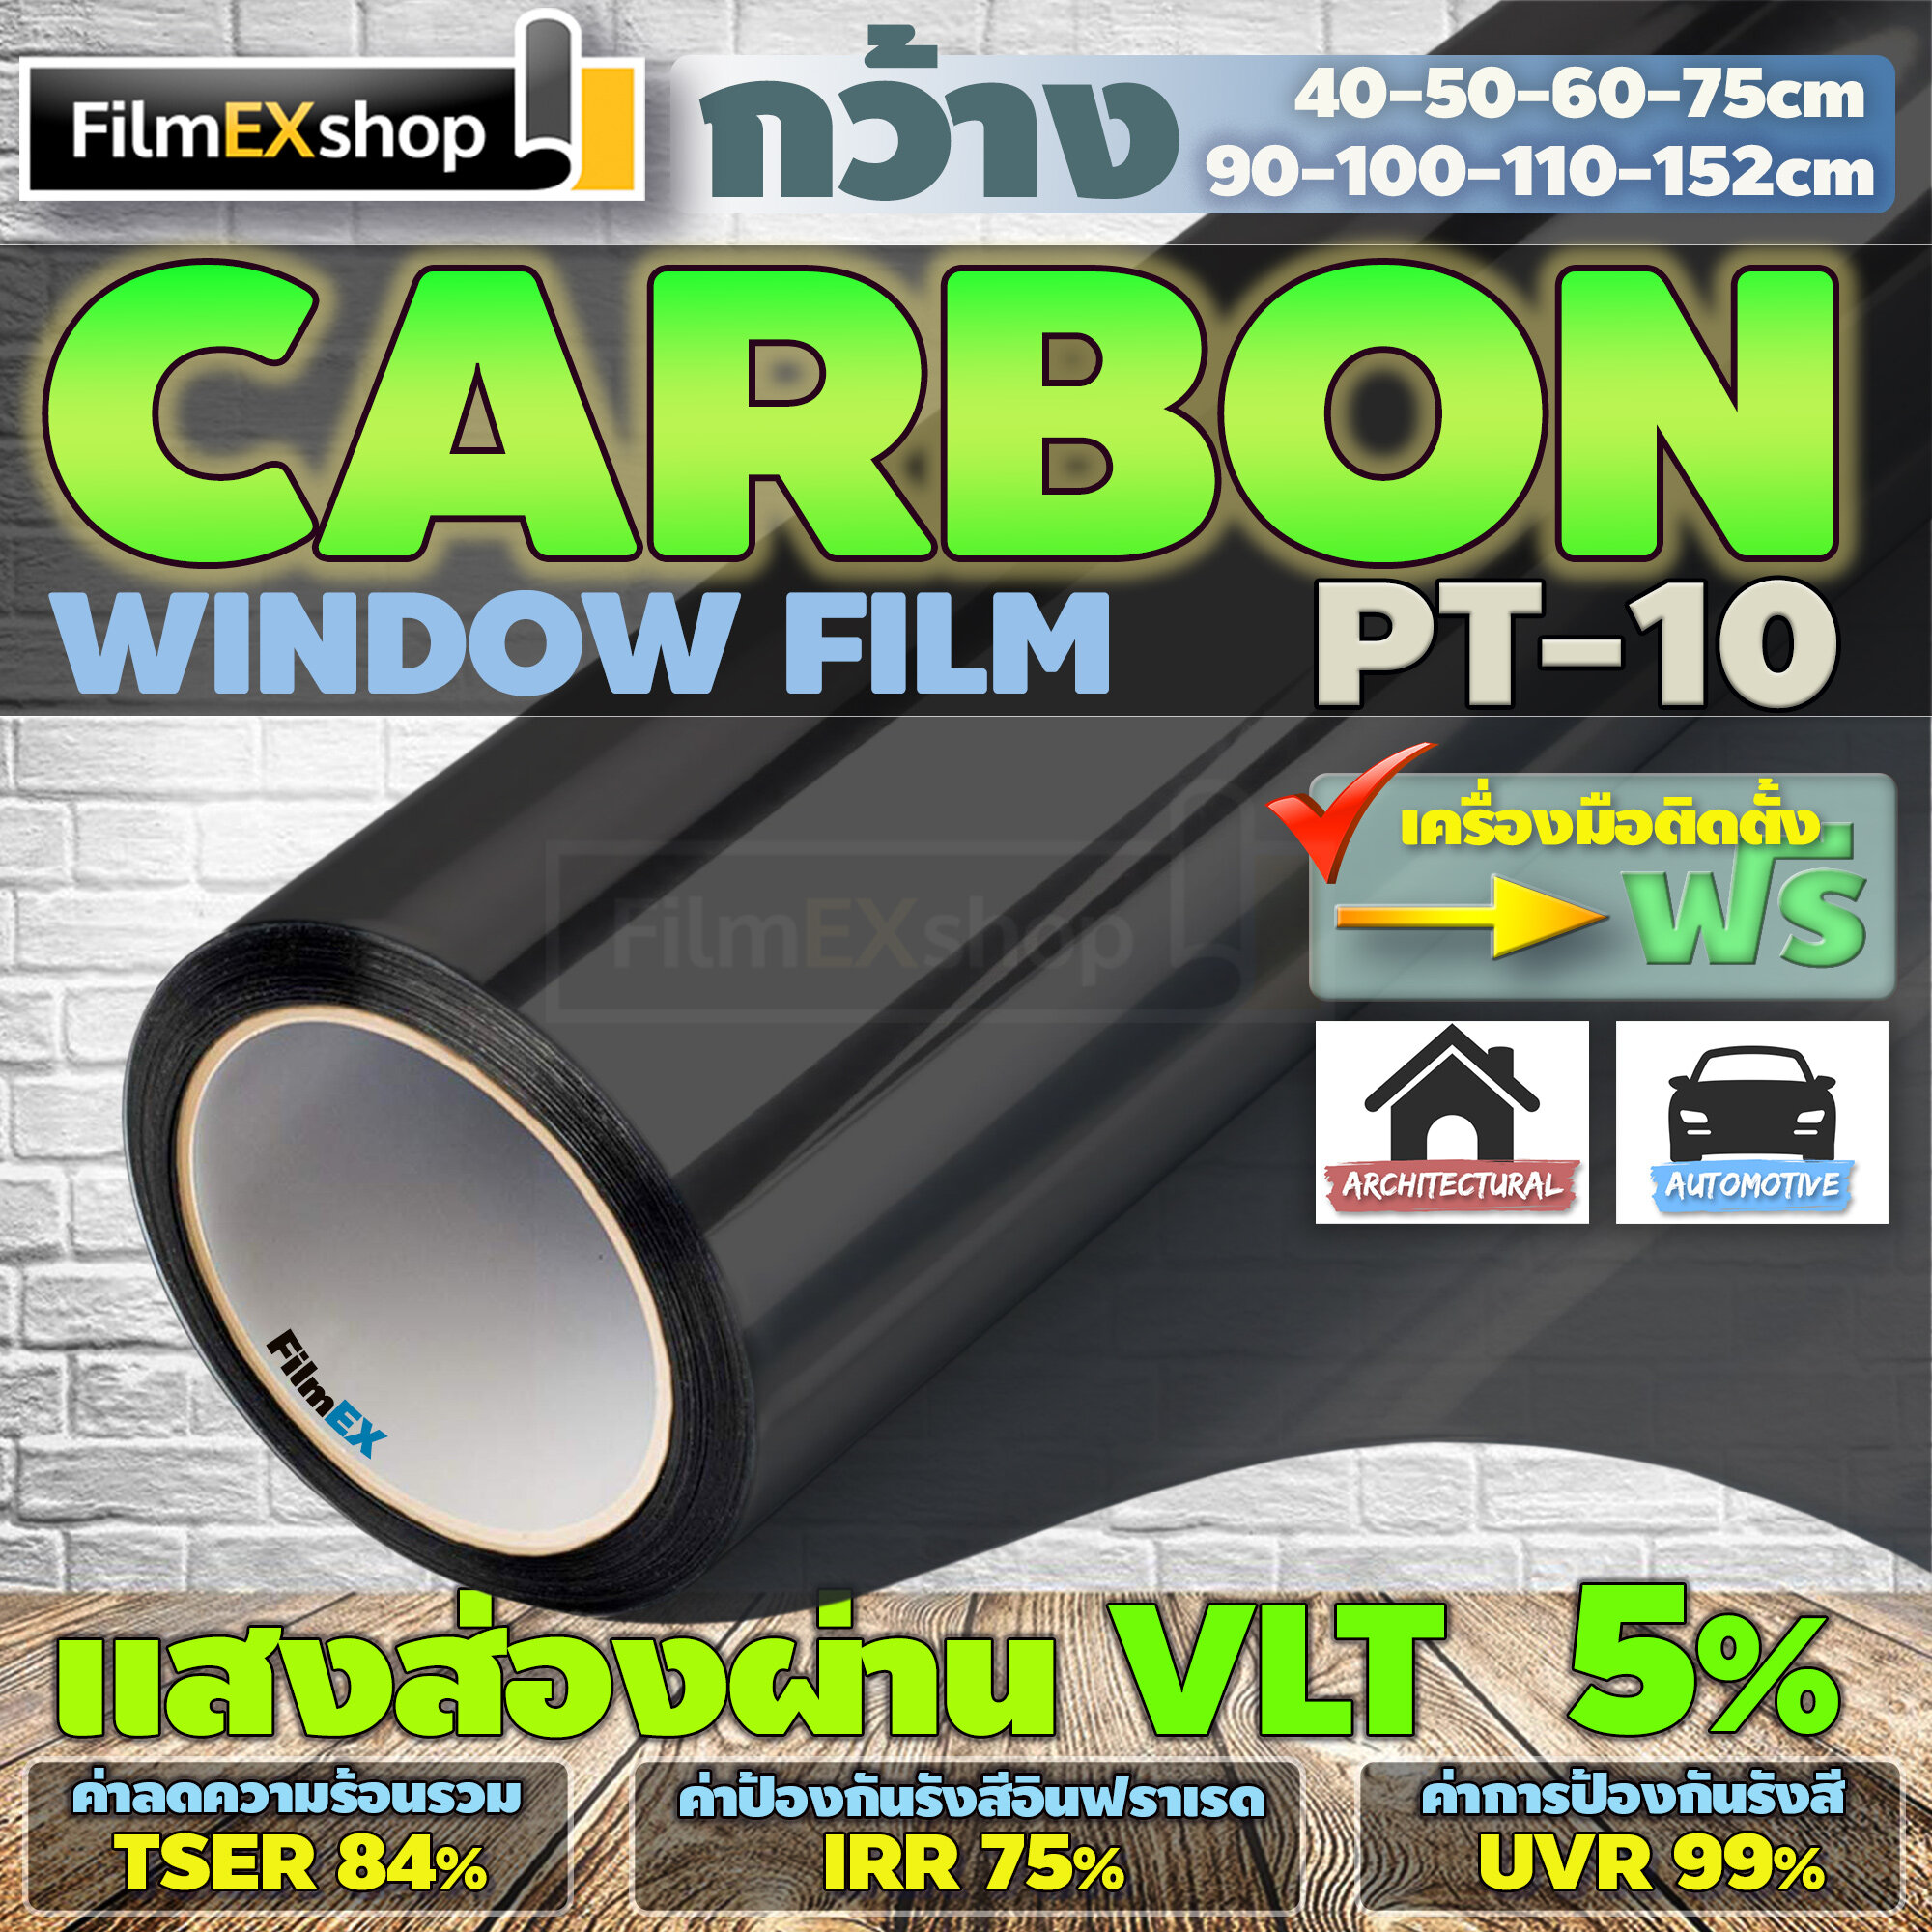 PT-10  VLT 5%  ฟิล์มคาร์บอน Carbon Window Film ฟิล์มกรองแสง ฟิล์มติดกระจก ฟิล์มกรองแสงรถยนต์ (ราคาต่อเมตร)